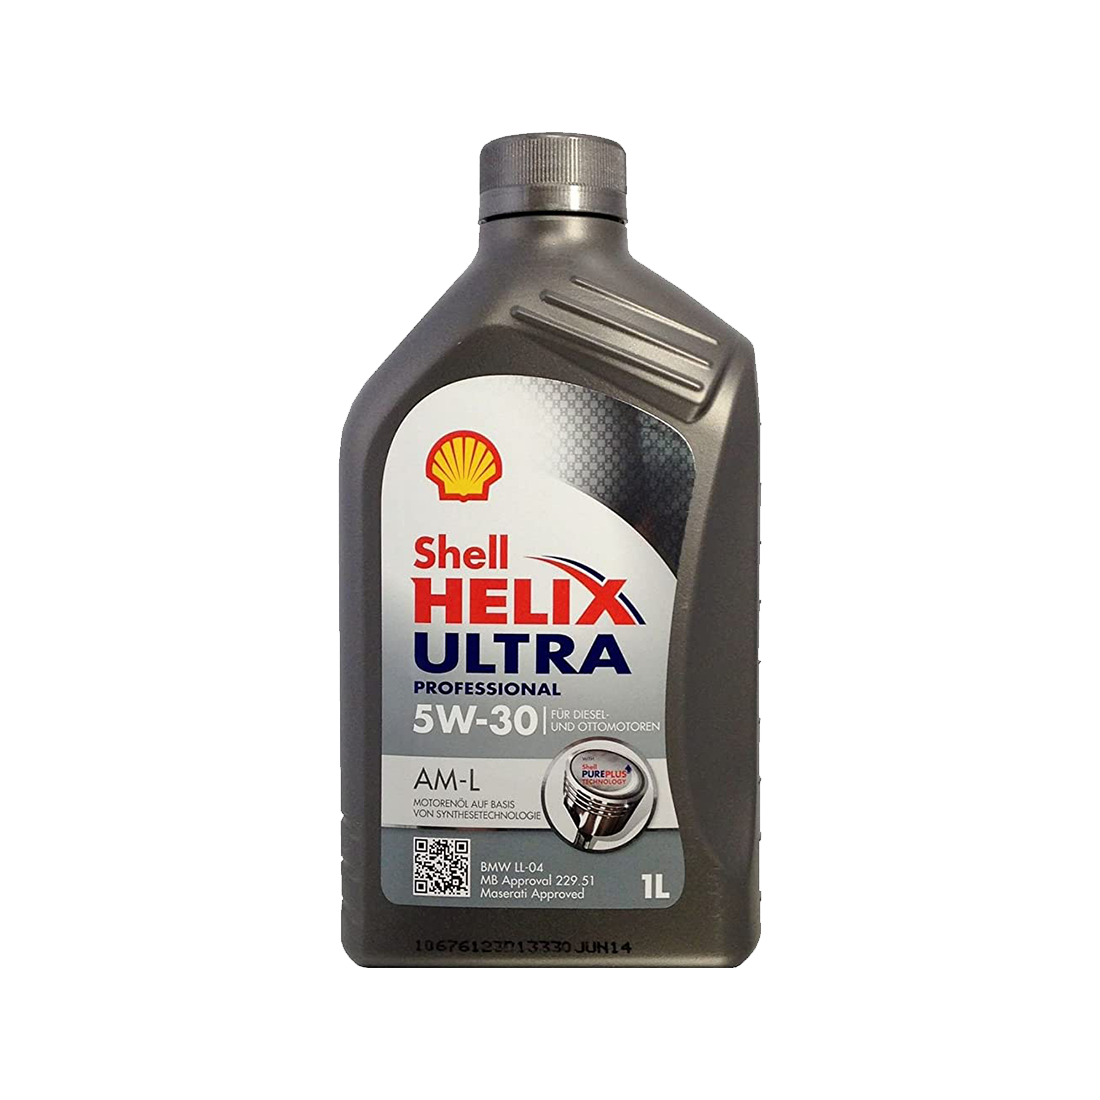 Syntetiskolja Shell Helix Ultra Professional AM-L 5W-30, 1L